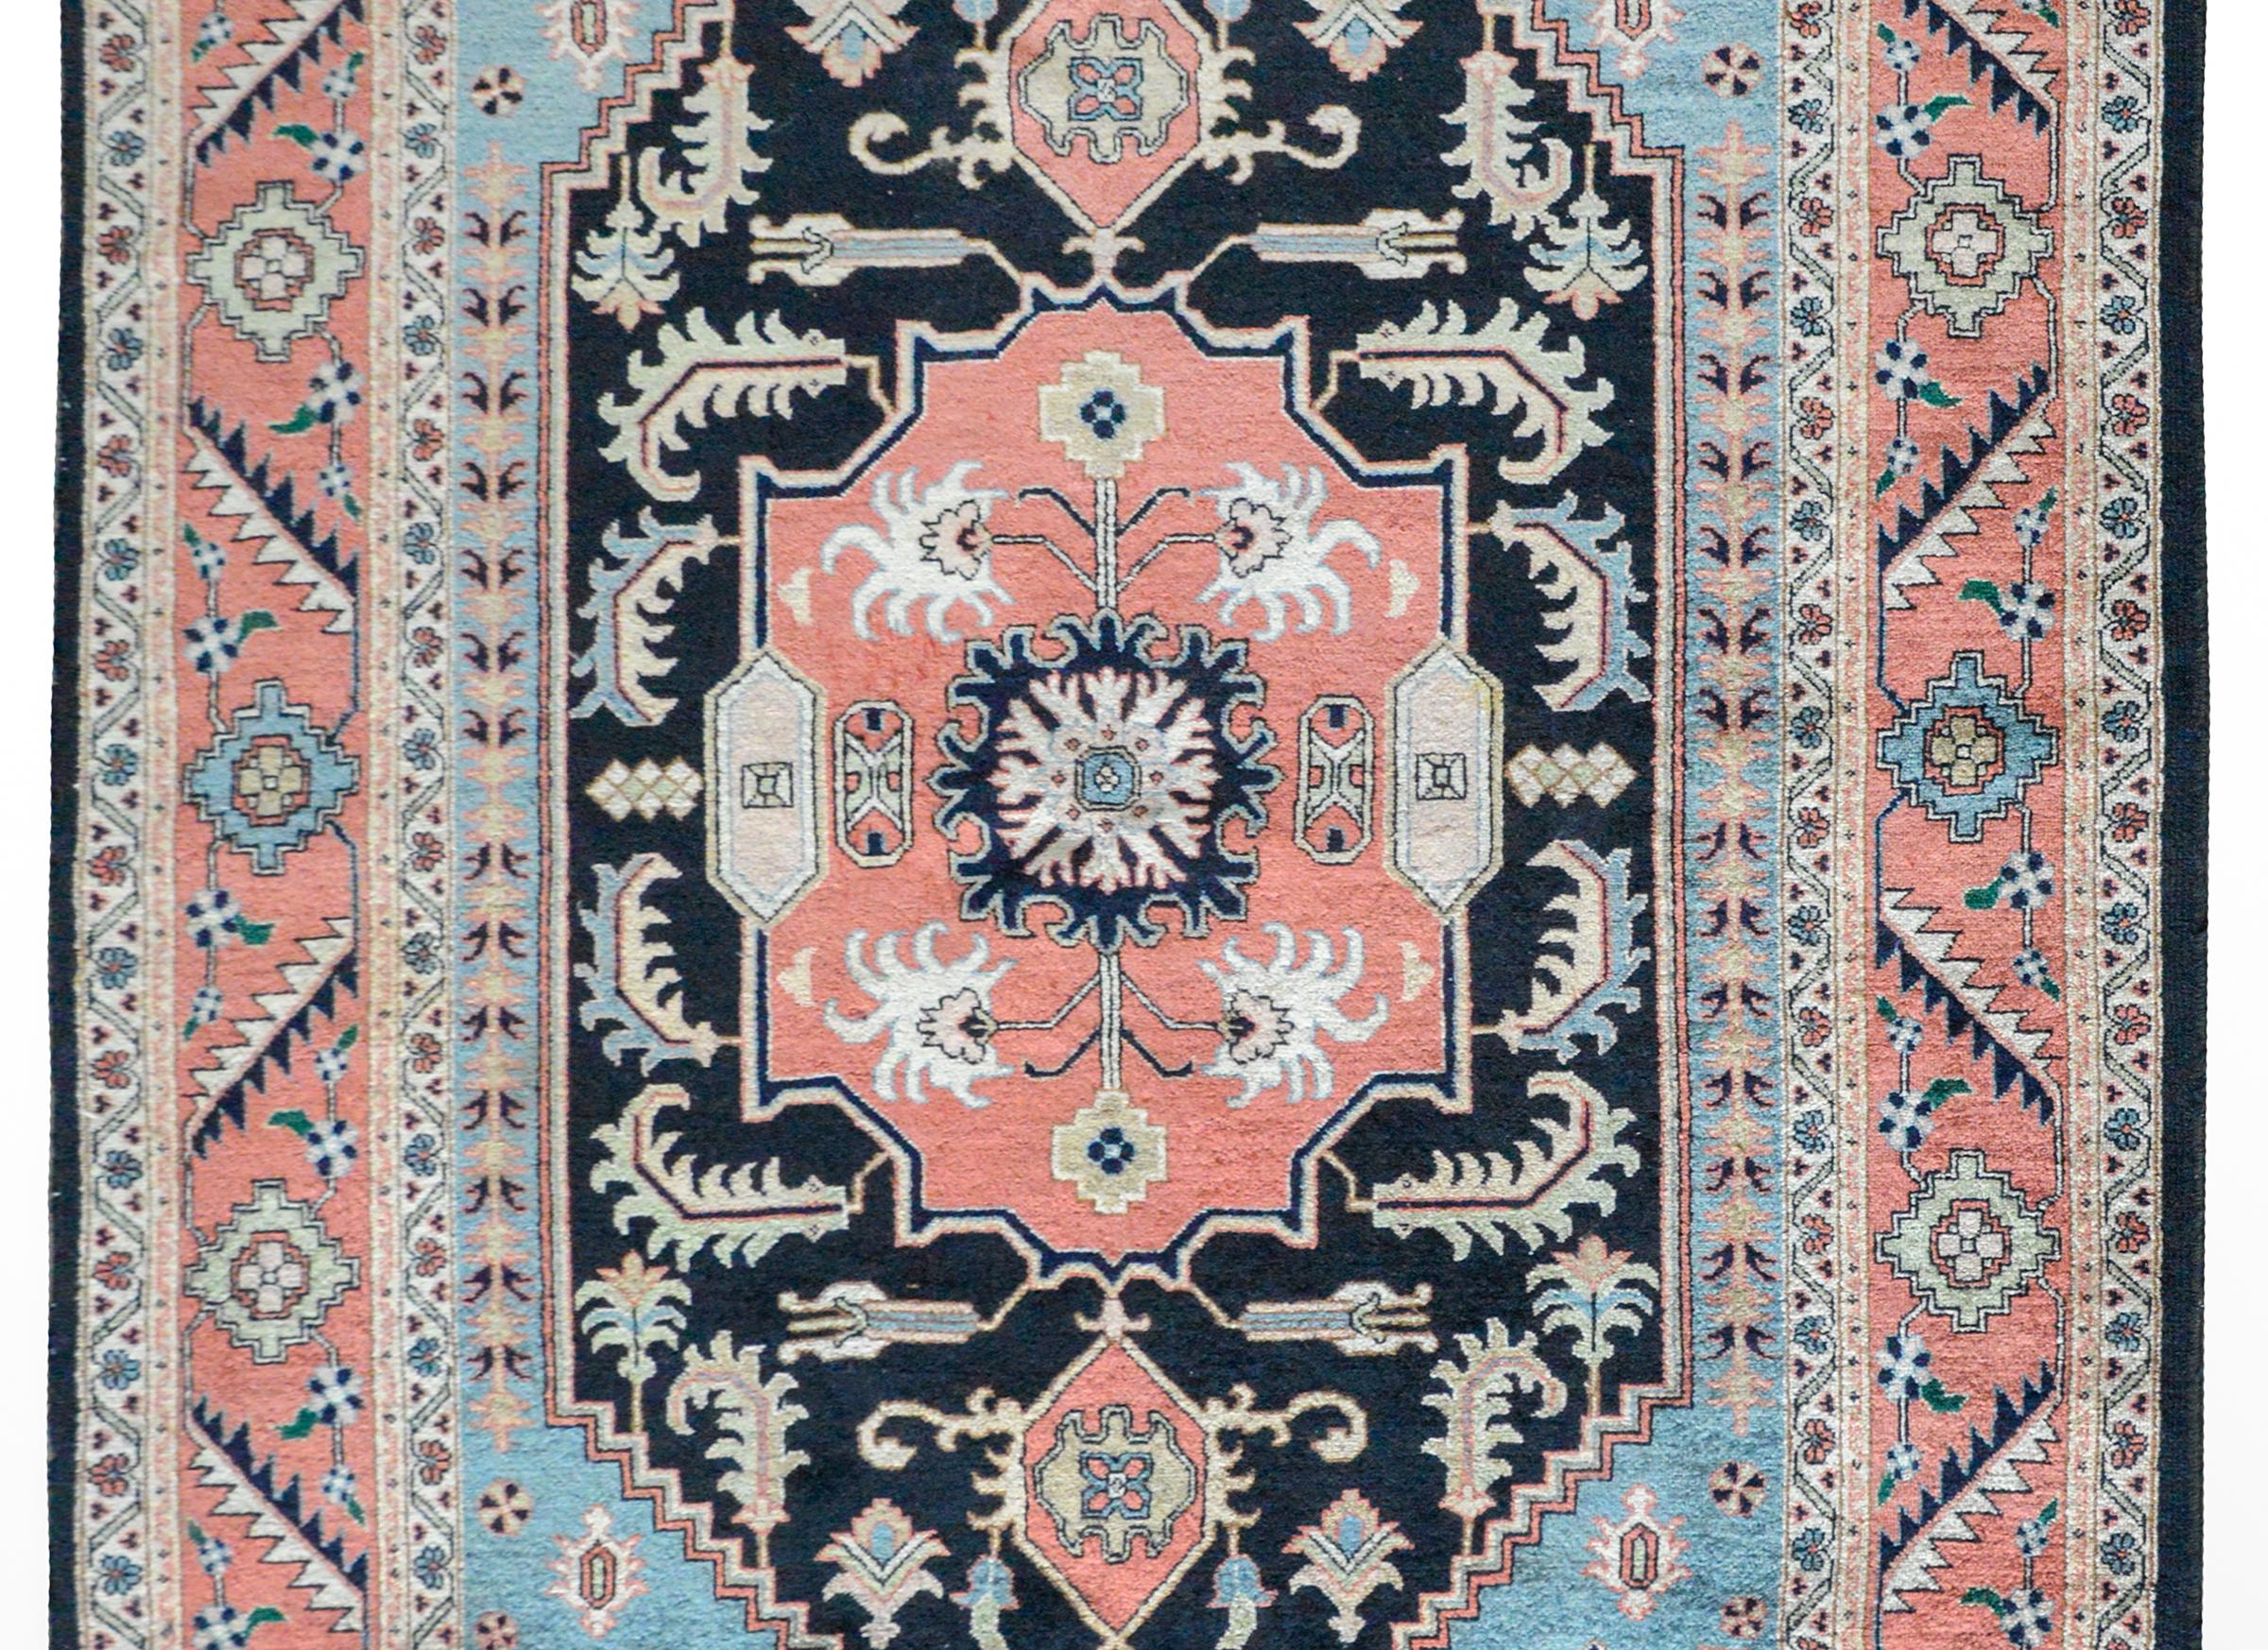 Magnifique tapis vintage persan Heriz, tissé avec un médaillon floral central au milieu d'un champ de fleurs stylisées plus audacieuses, et entouré d'une large bordure à motifs floraux et de feuilles, le tout tissé dans des tons sourds de rouge, de